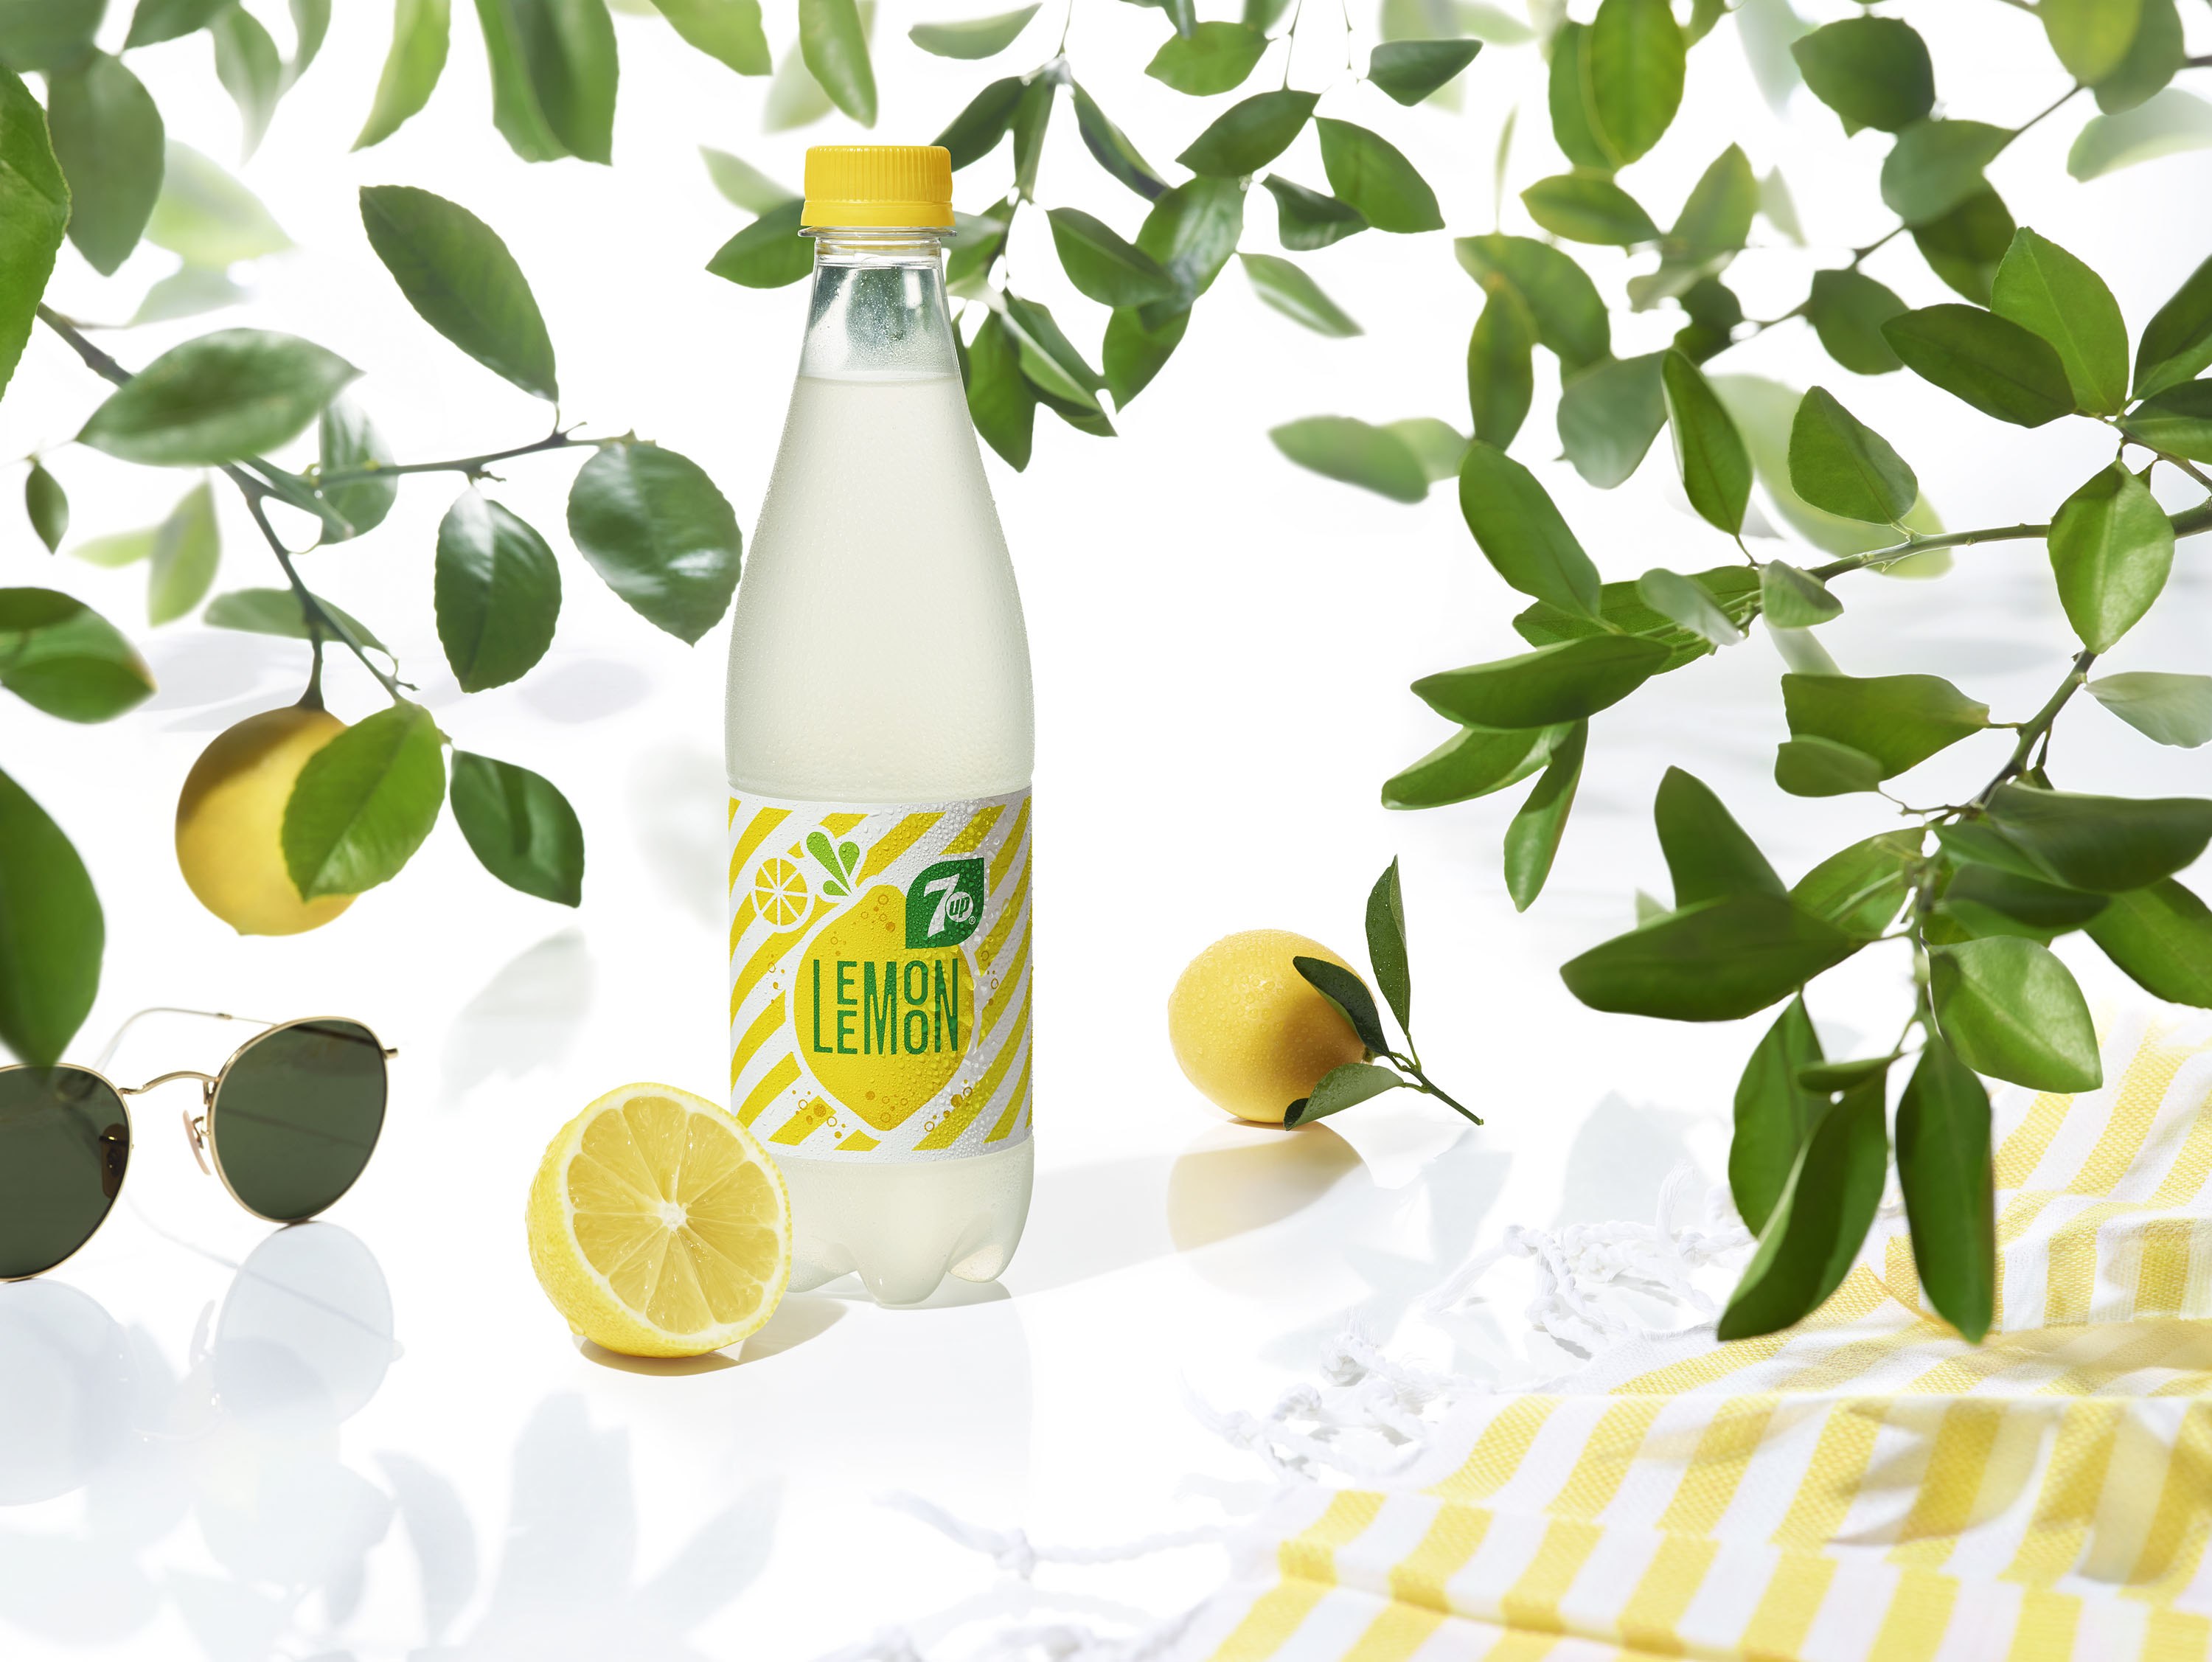 Лемон лид. 7ап лимон. Напиток Lemon лимонад. Лимонный Севен ап. 7up Lemon Lemon персикофф.